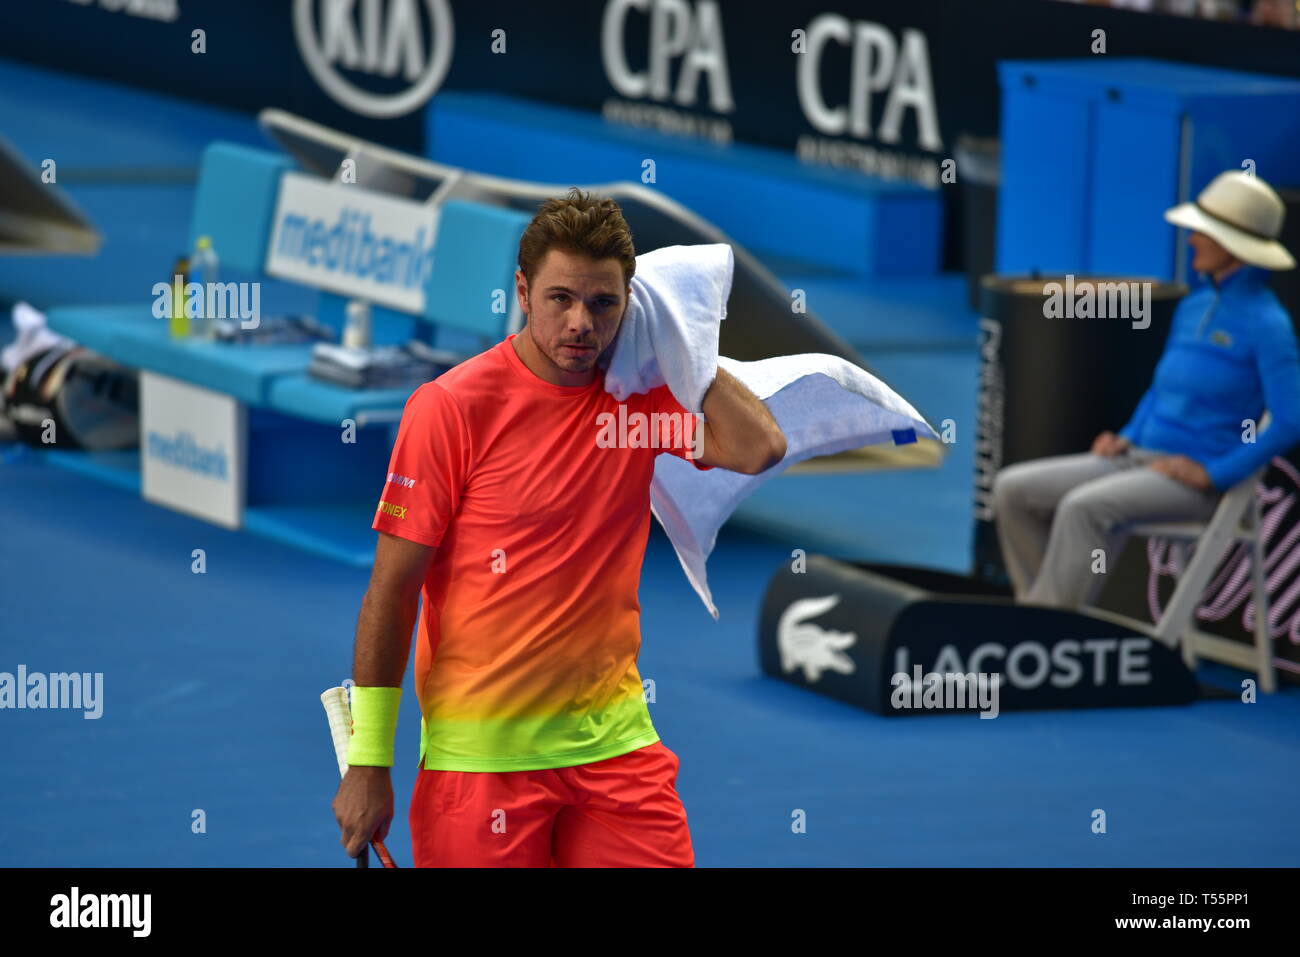 Stan Wawrinka, un jugador profesional suizo de tenis, jugó en el Abierto de Australia 2016 en Melbourne, Australia Foto de stock